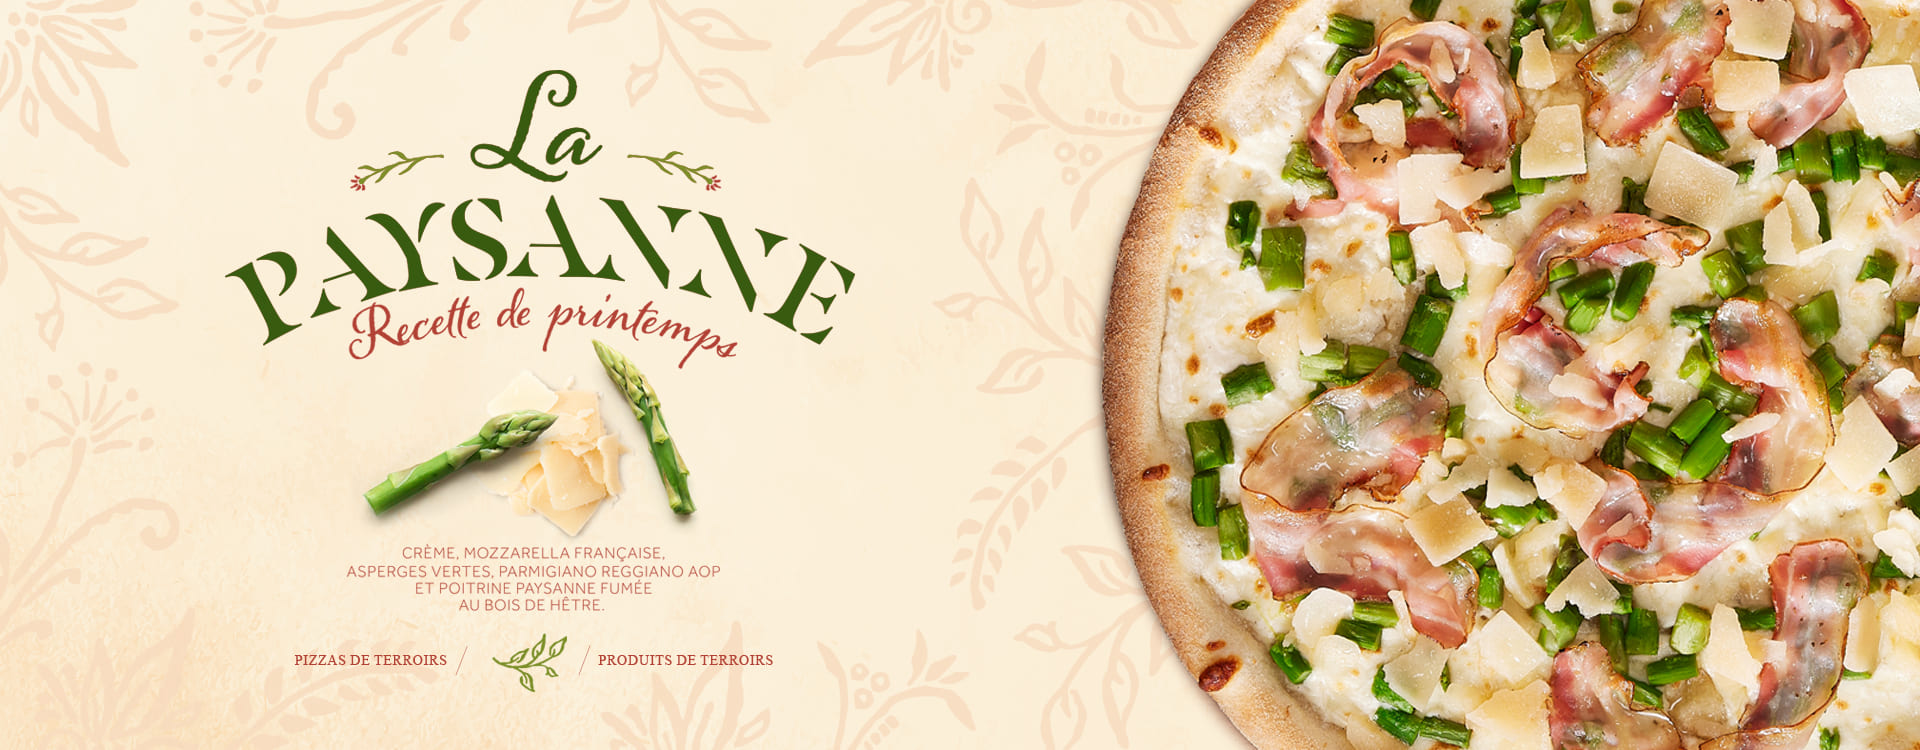 Pizza Paysanne des restaurants Basilic & Co